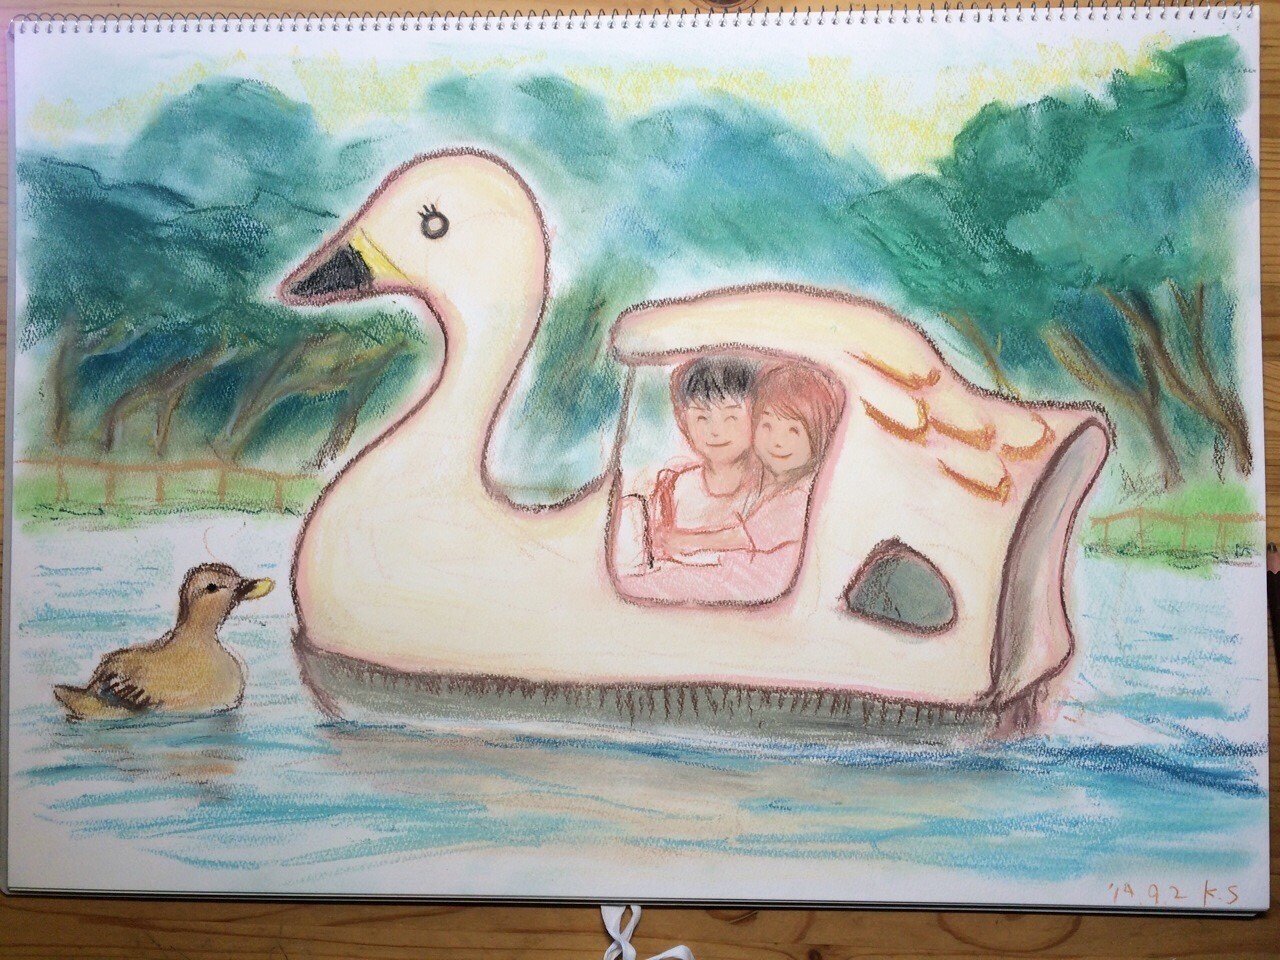 井の頭公園のスワンボートに乗る恋人 篠𠩤健太 コマ撮りアニメーター Note